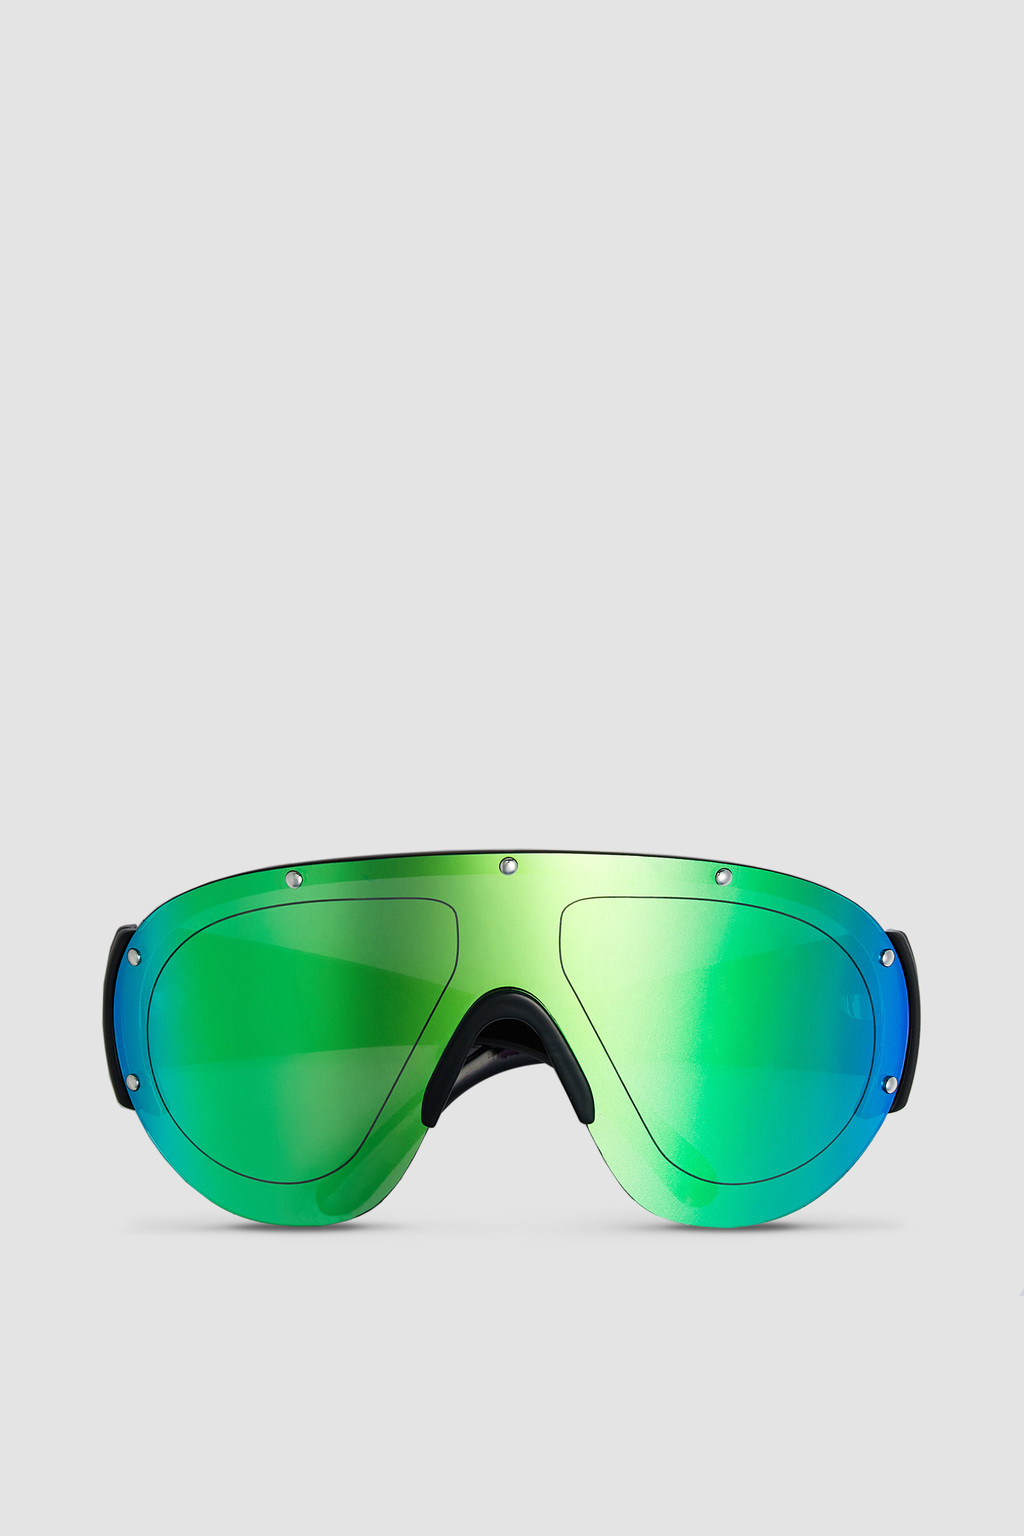 Buy Web Eyewear Green Plastic Men Sunglasses WE0265 50 01N Online